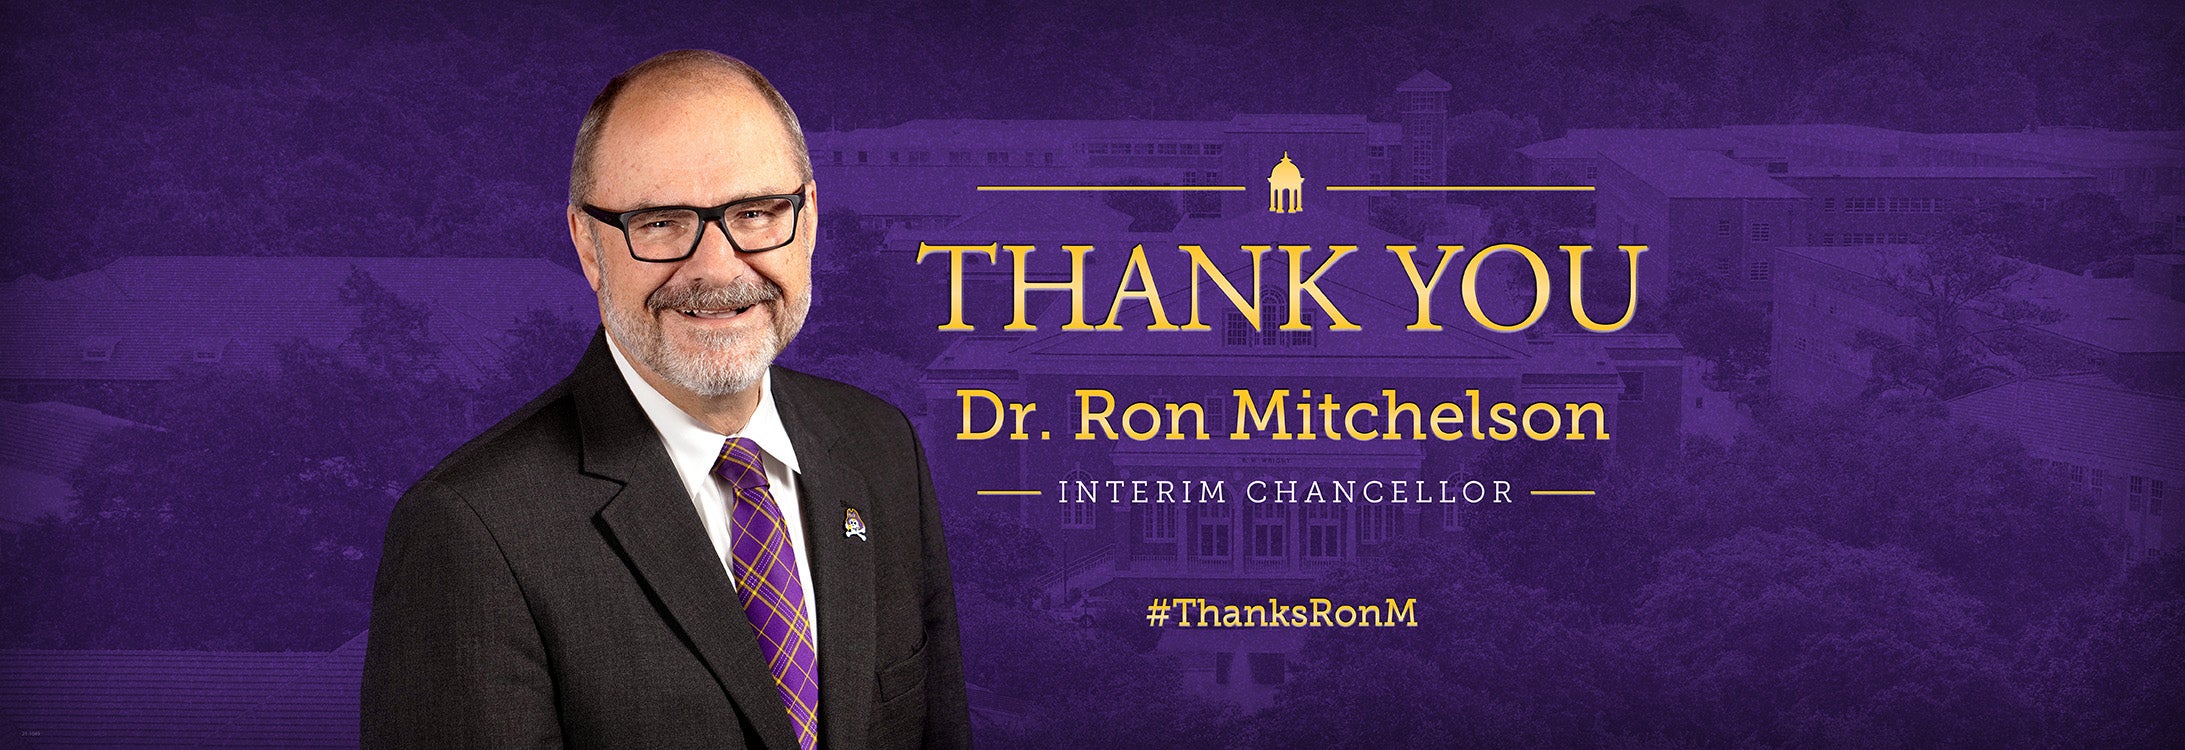 Thank You Dr. Ron Mitchelson, Interim Chancellor. #ThanksRonM